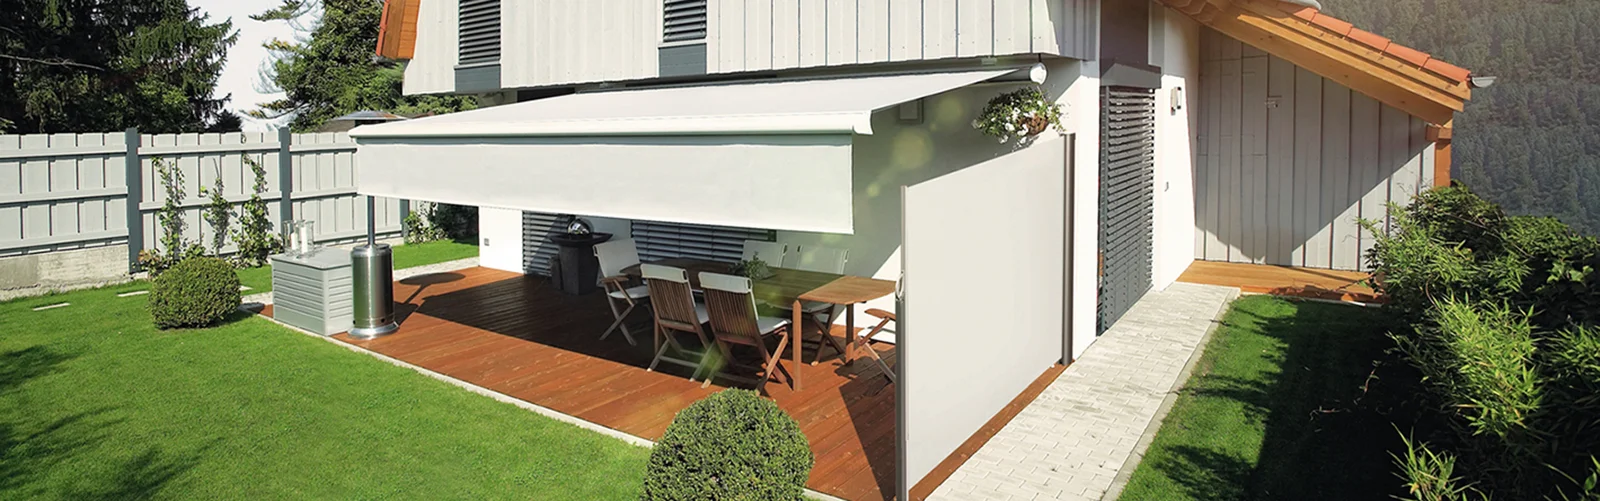 Sonnenschutz für Haus und Terrasse